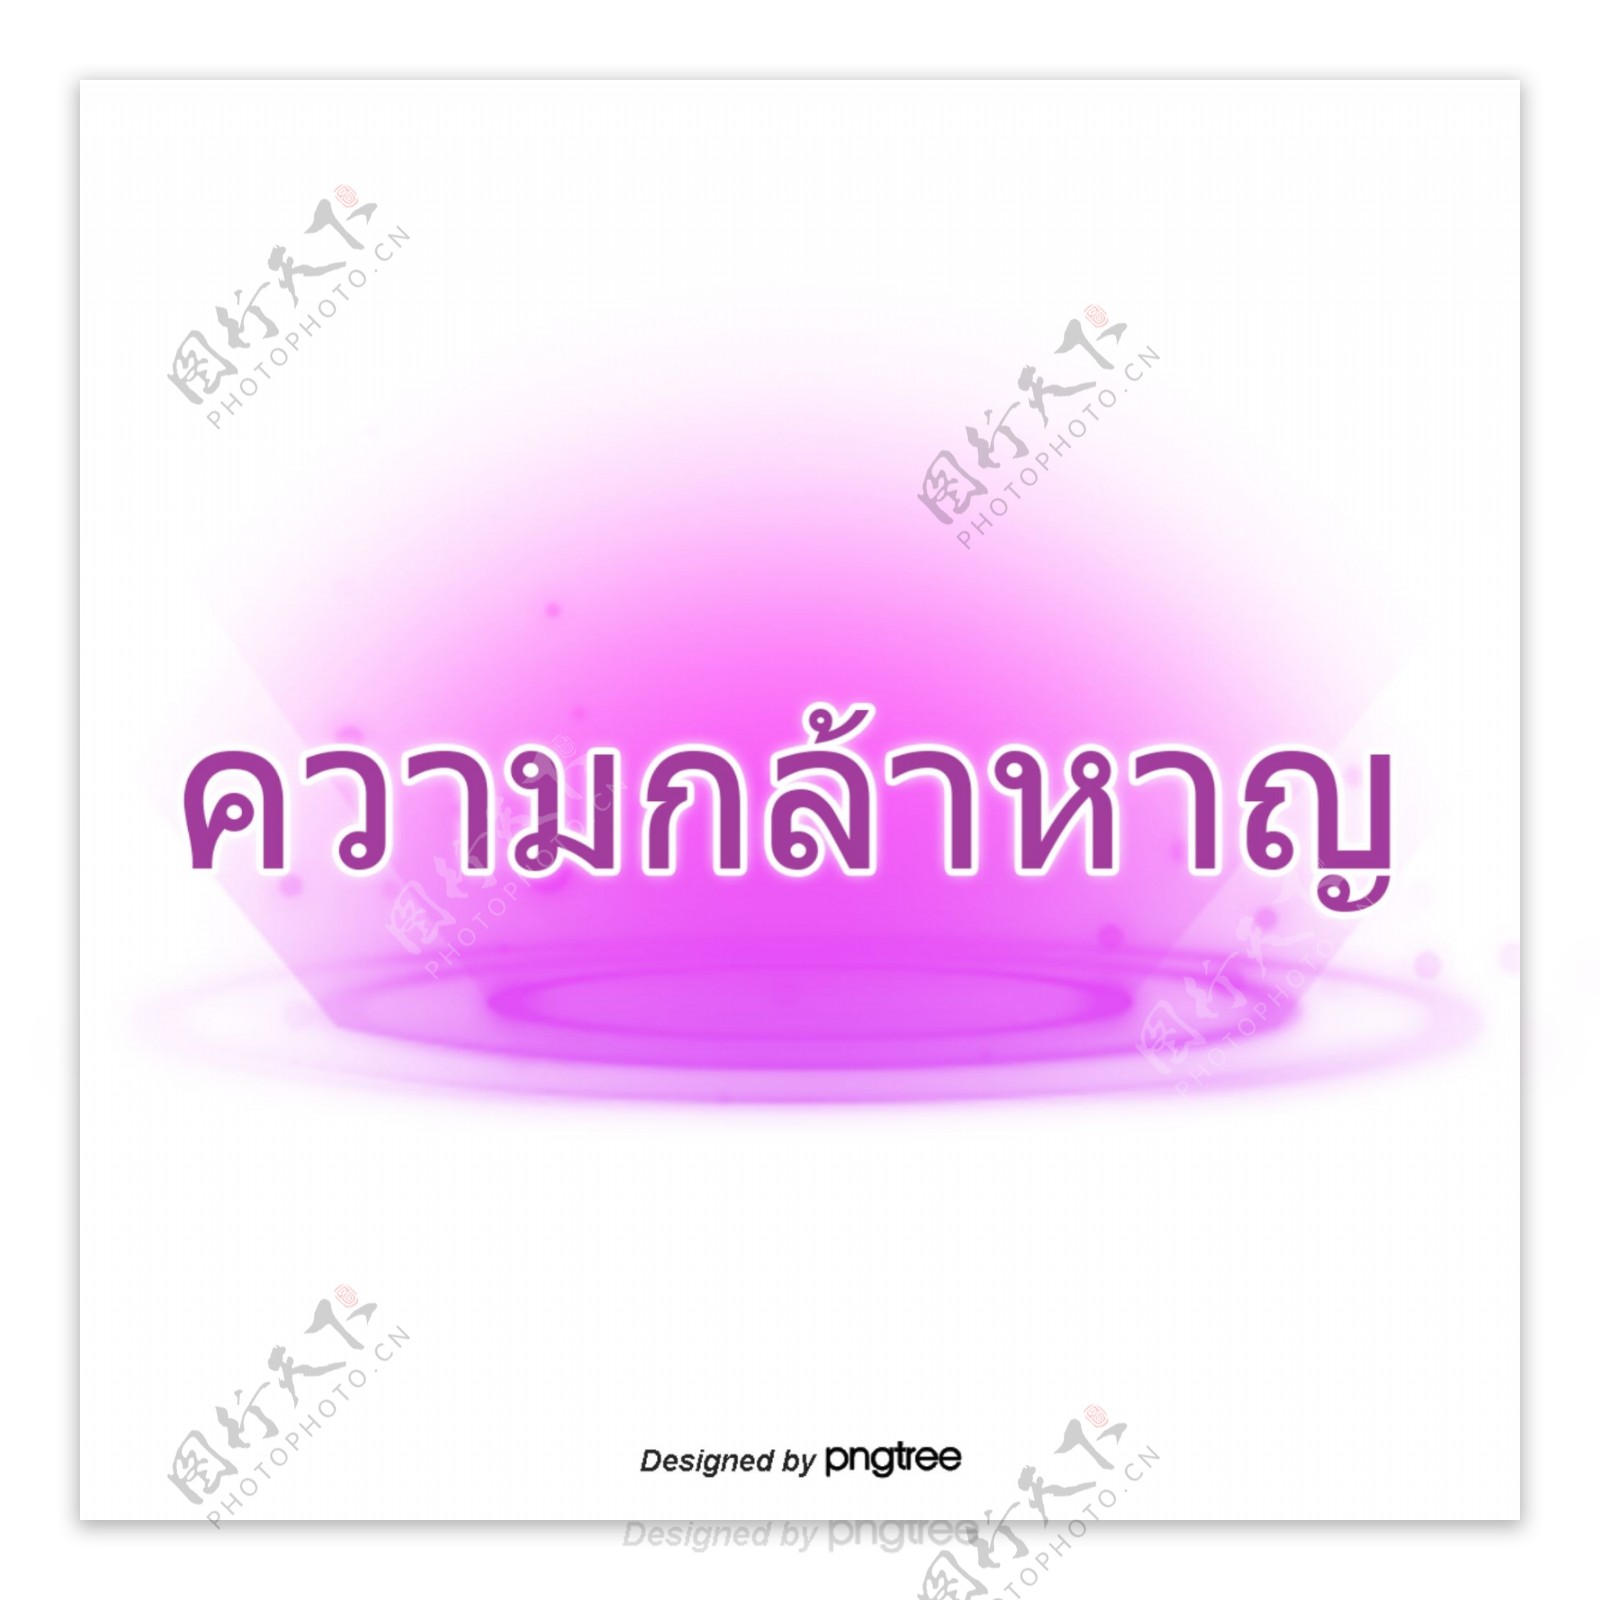 汉字字体设计在紫色紫色地勇气